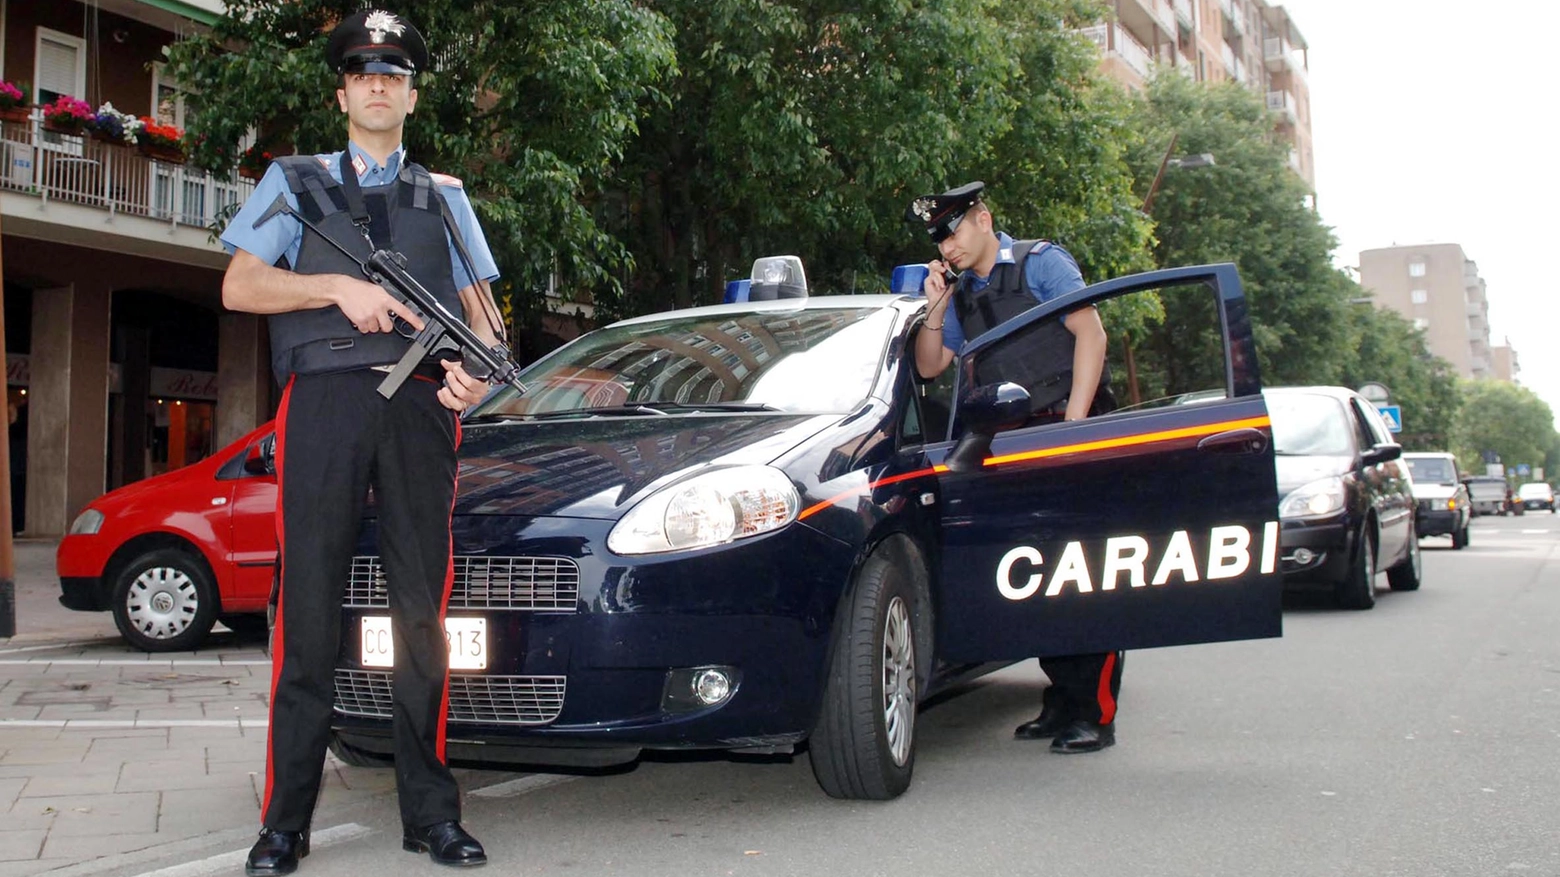 L'uomo è stato arrestato dai carabinieri (foto Canali)